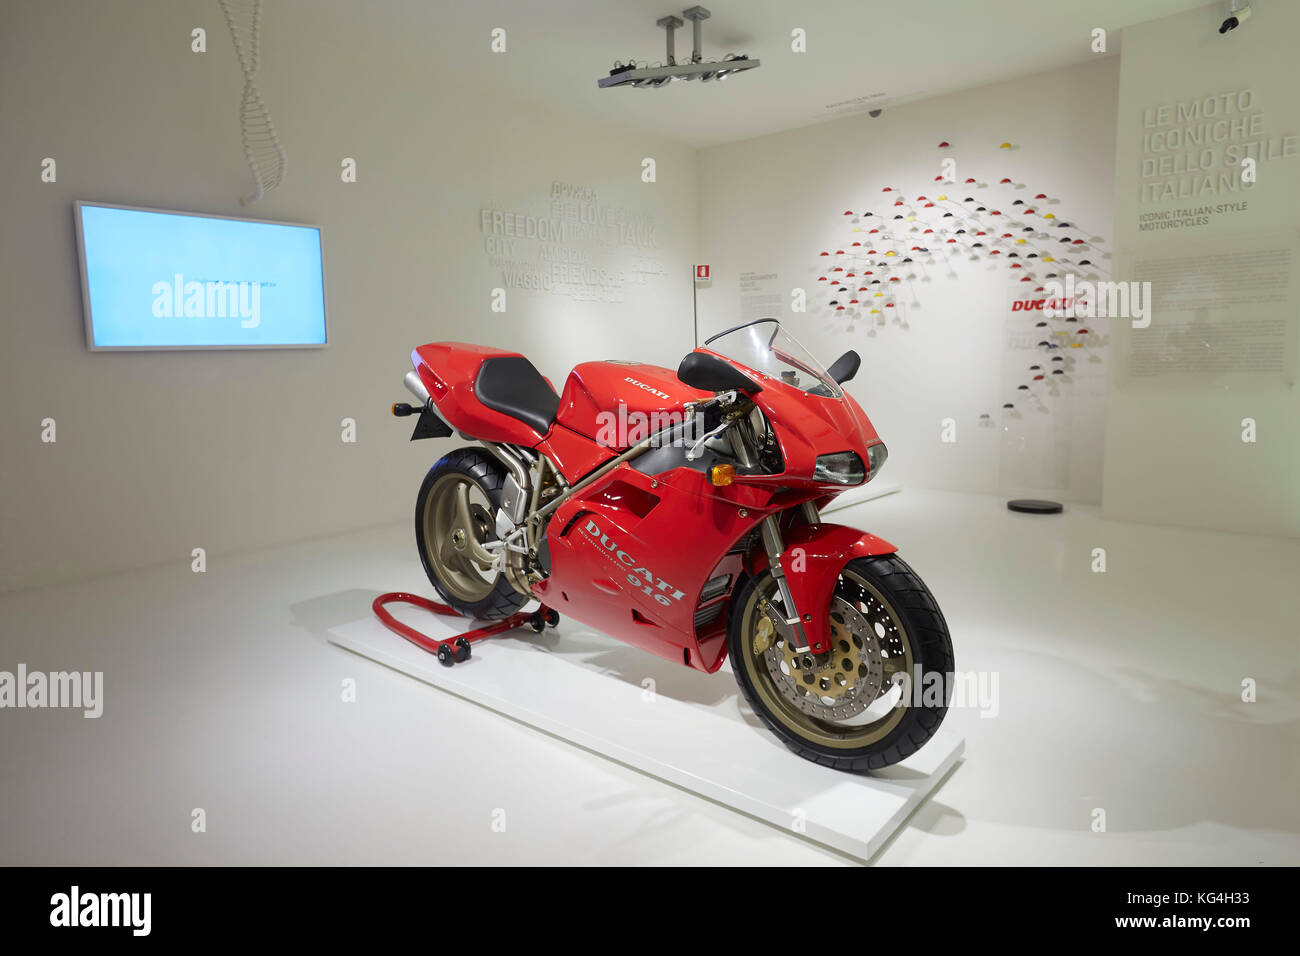 Ducati classic 916 motocicletas Ducati en exhibición en el museo de la fábrica, Bolonia, Italia. Foto de stock